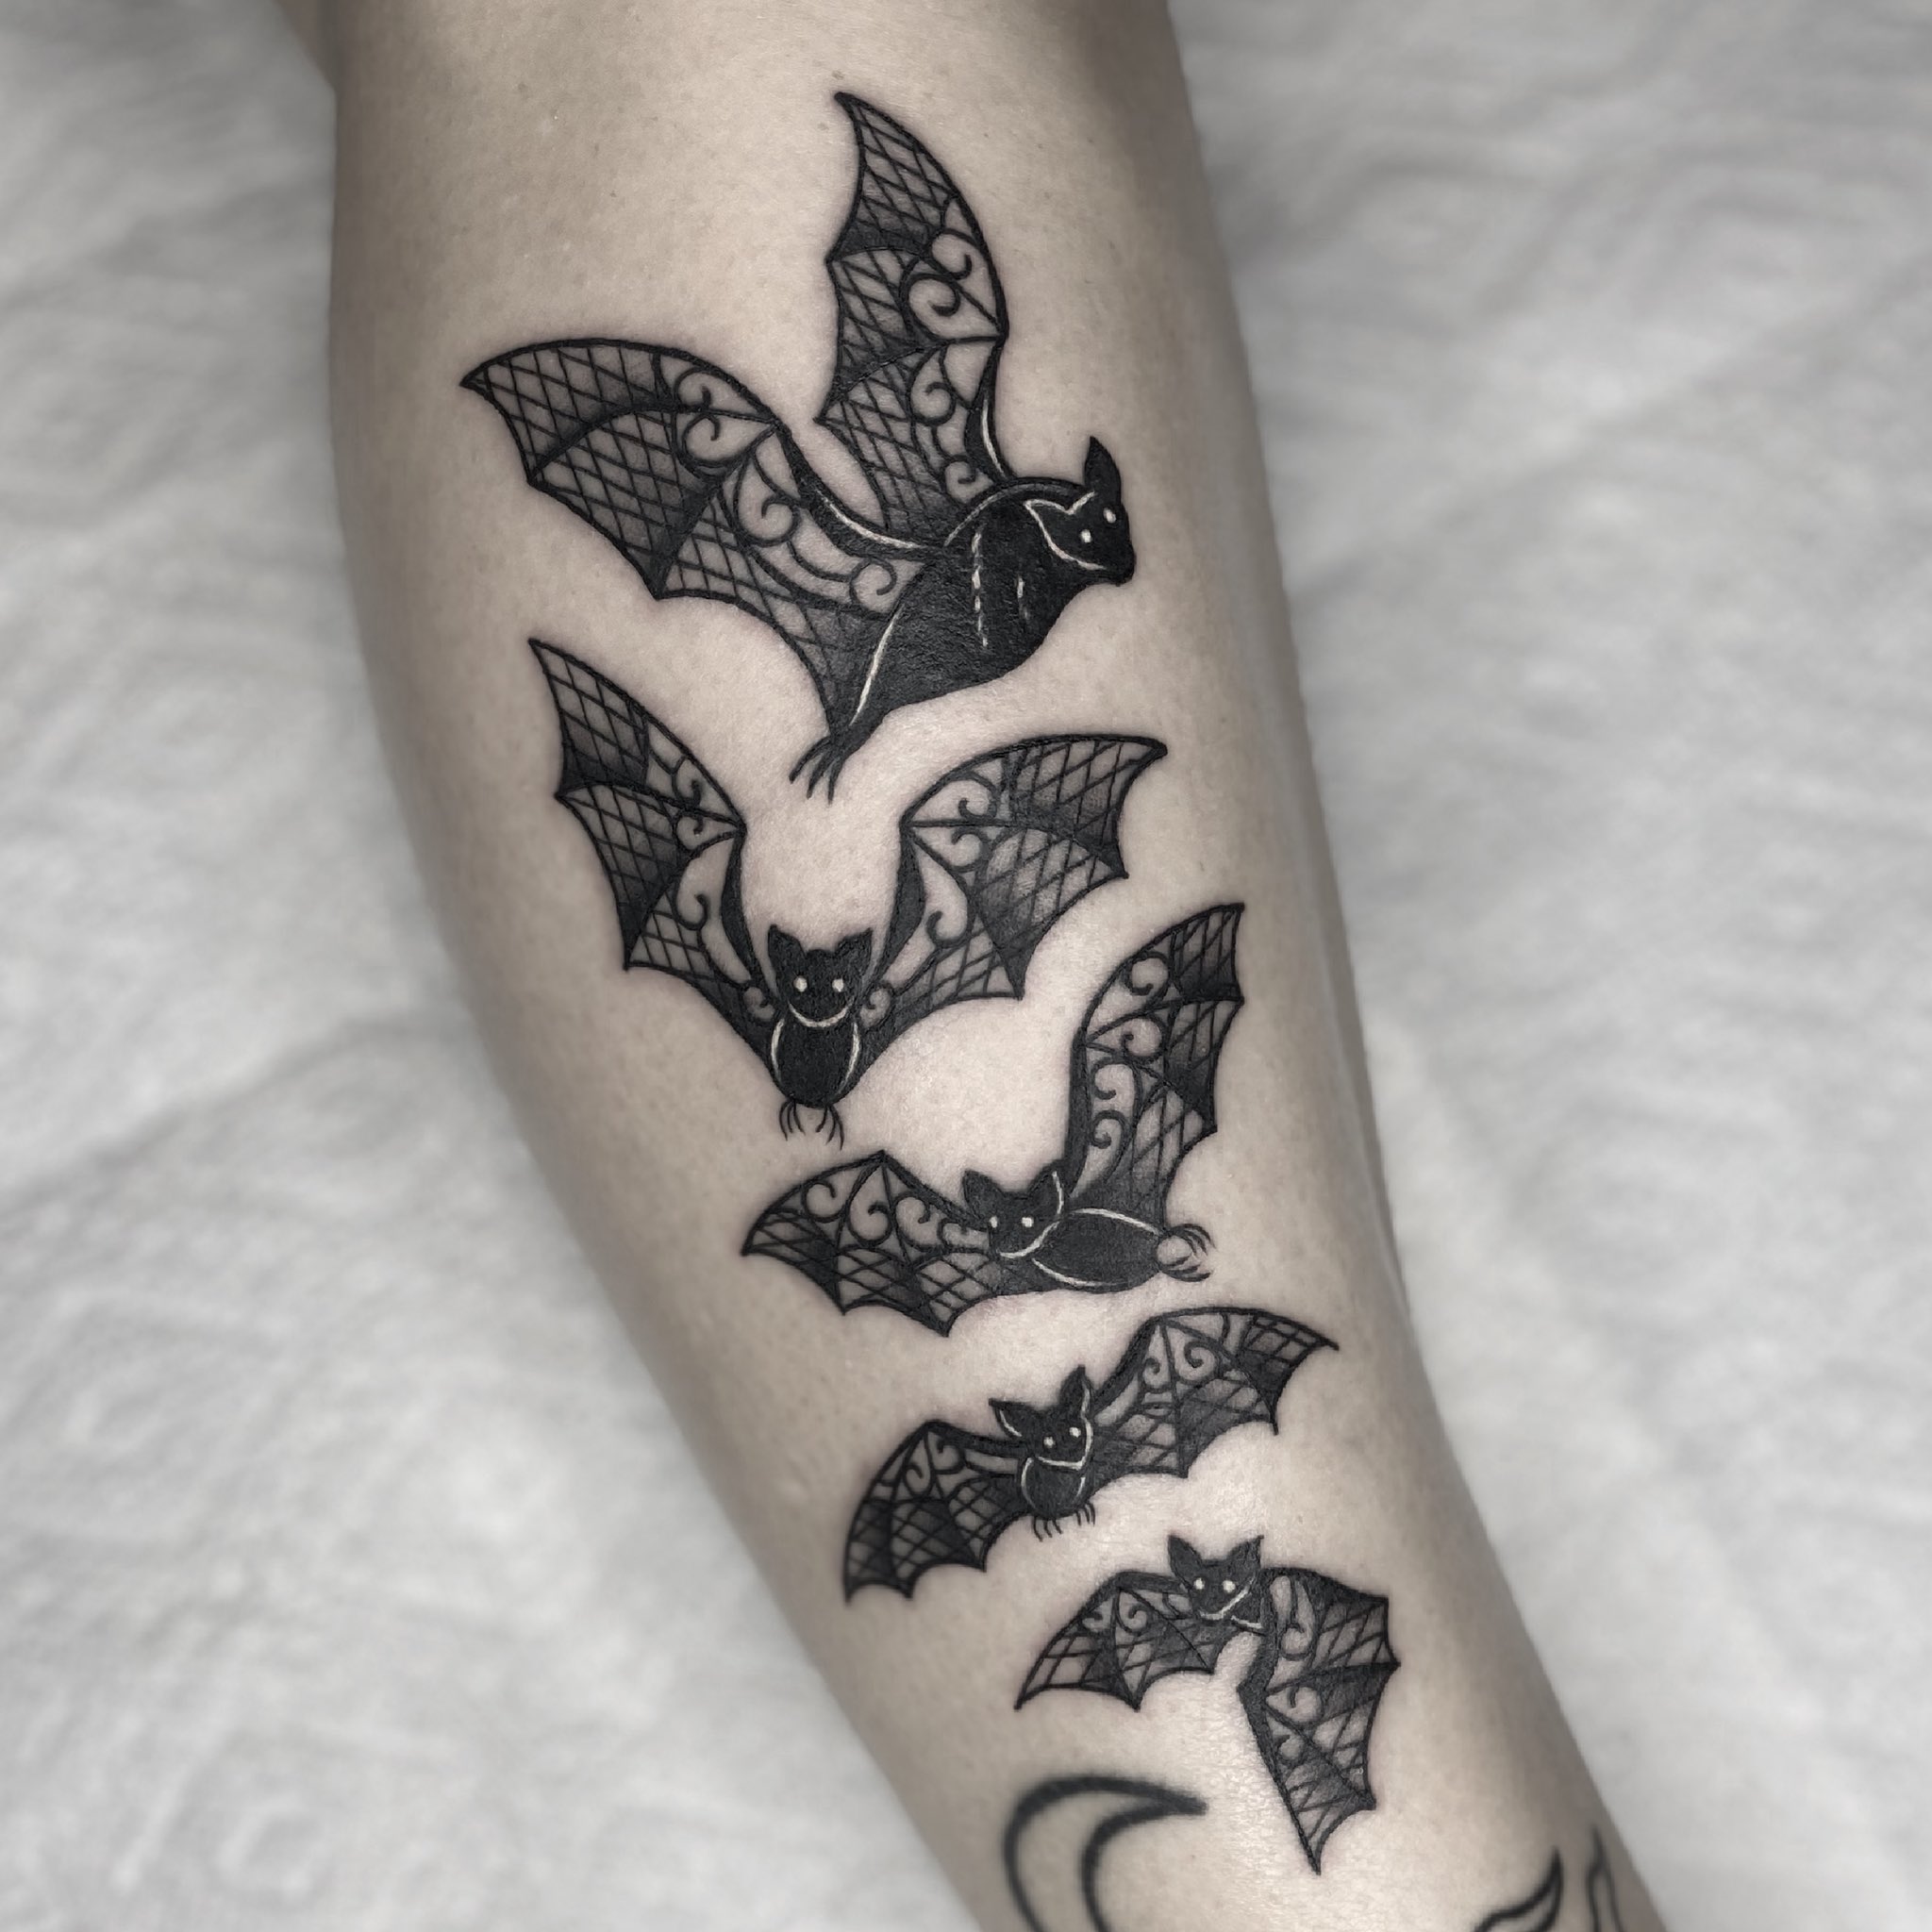 Small Colorful Bats Tattoo Idea